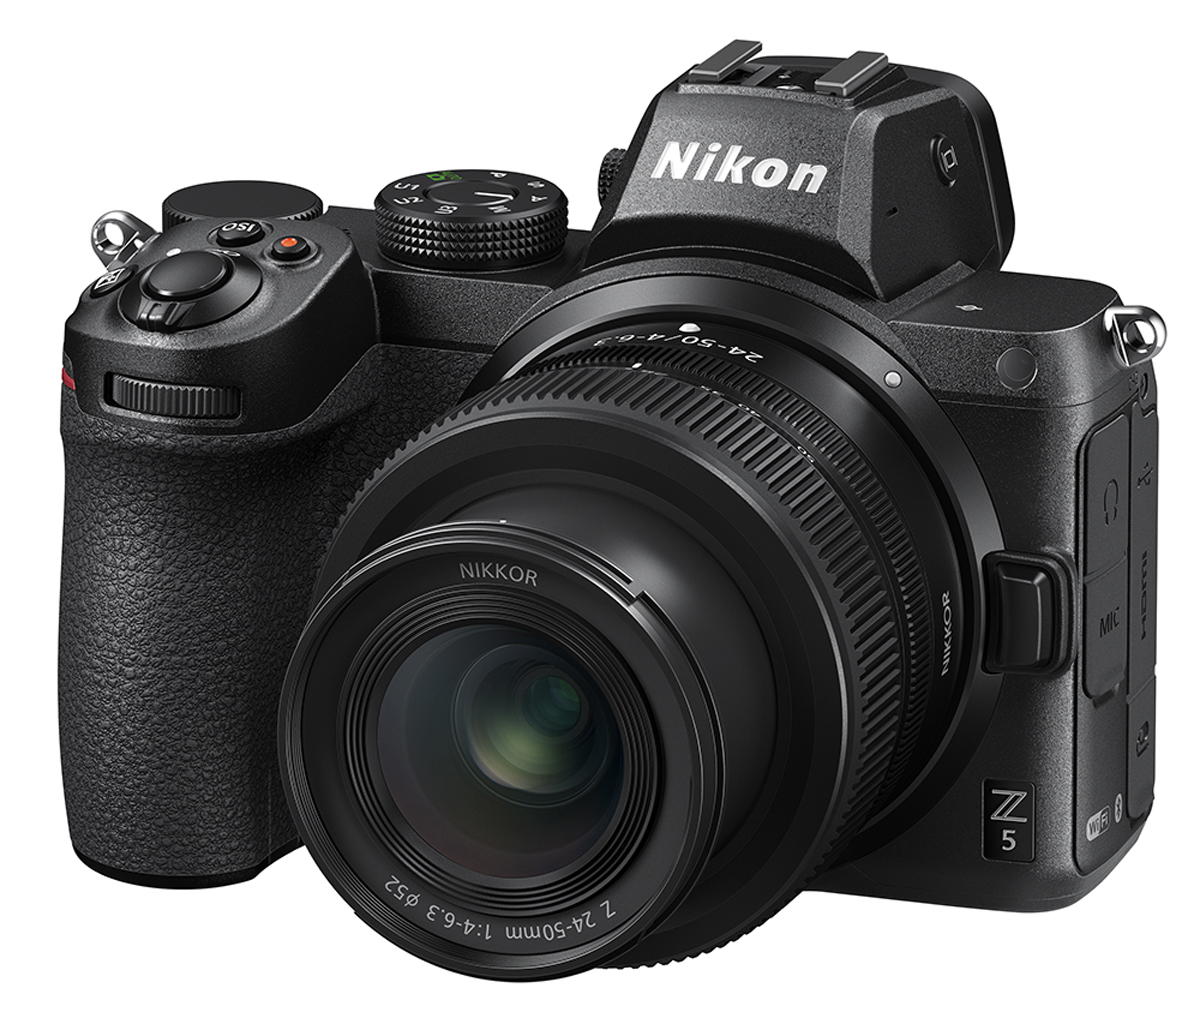  Nikon Z5 Diumumkan Secara Rasmi;  Kamera Tanpa Cermin Bingkai Penuh Dengan Sensor Format FX 24MP
